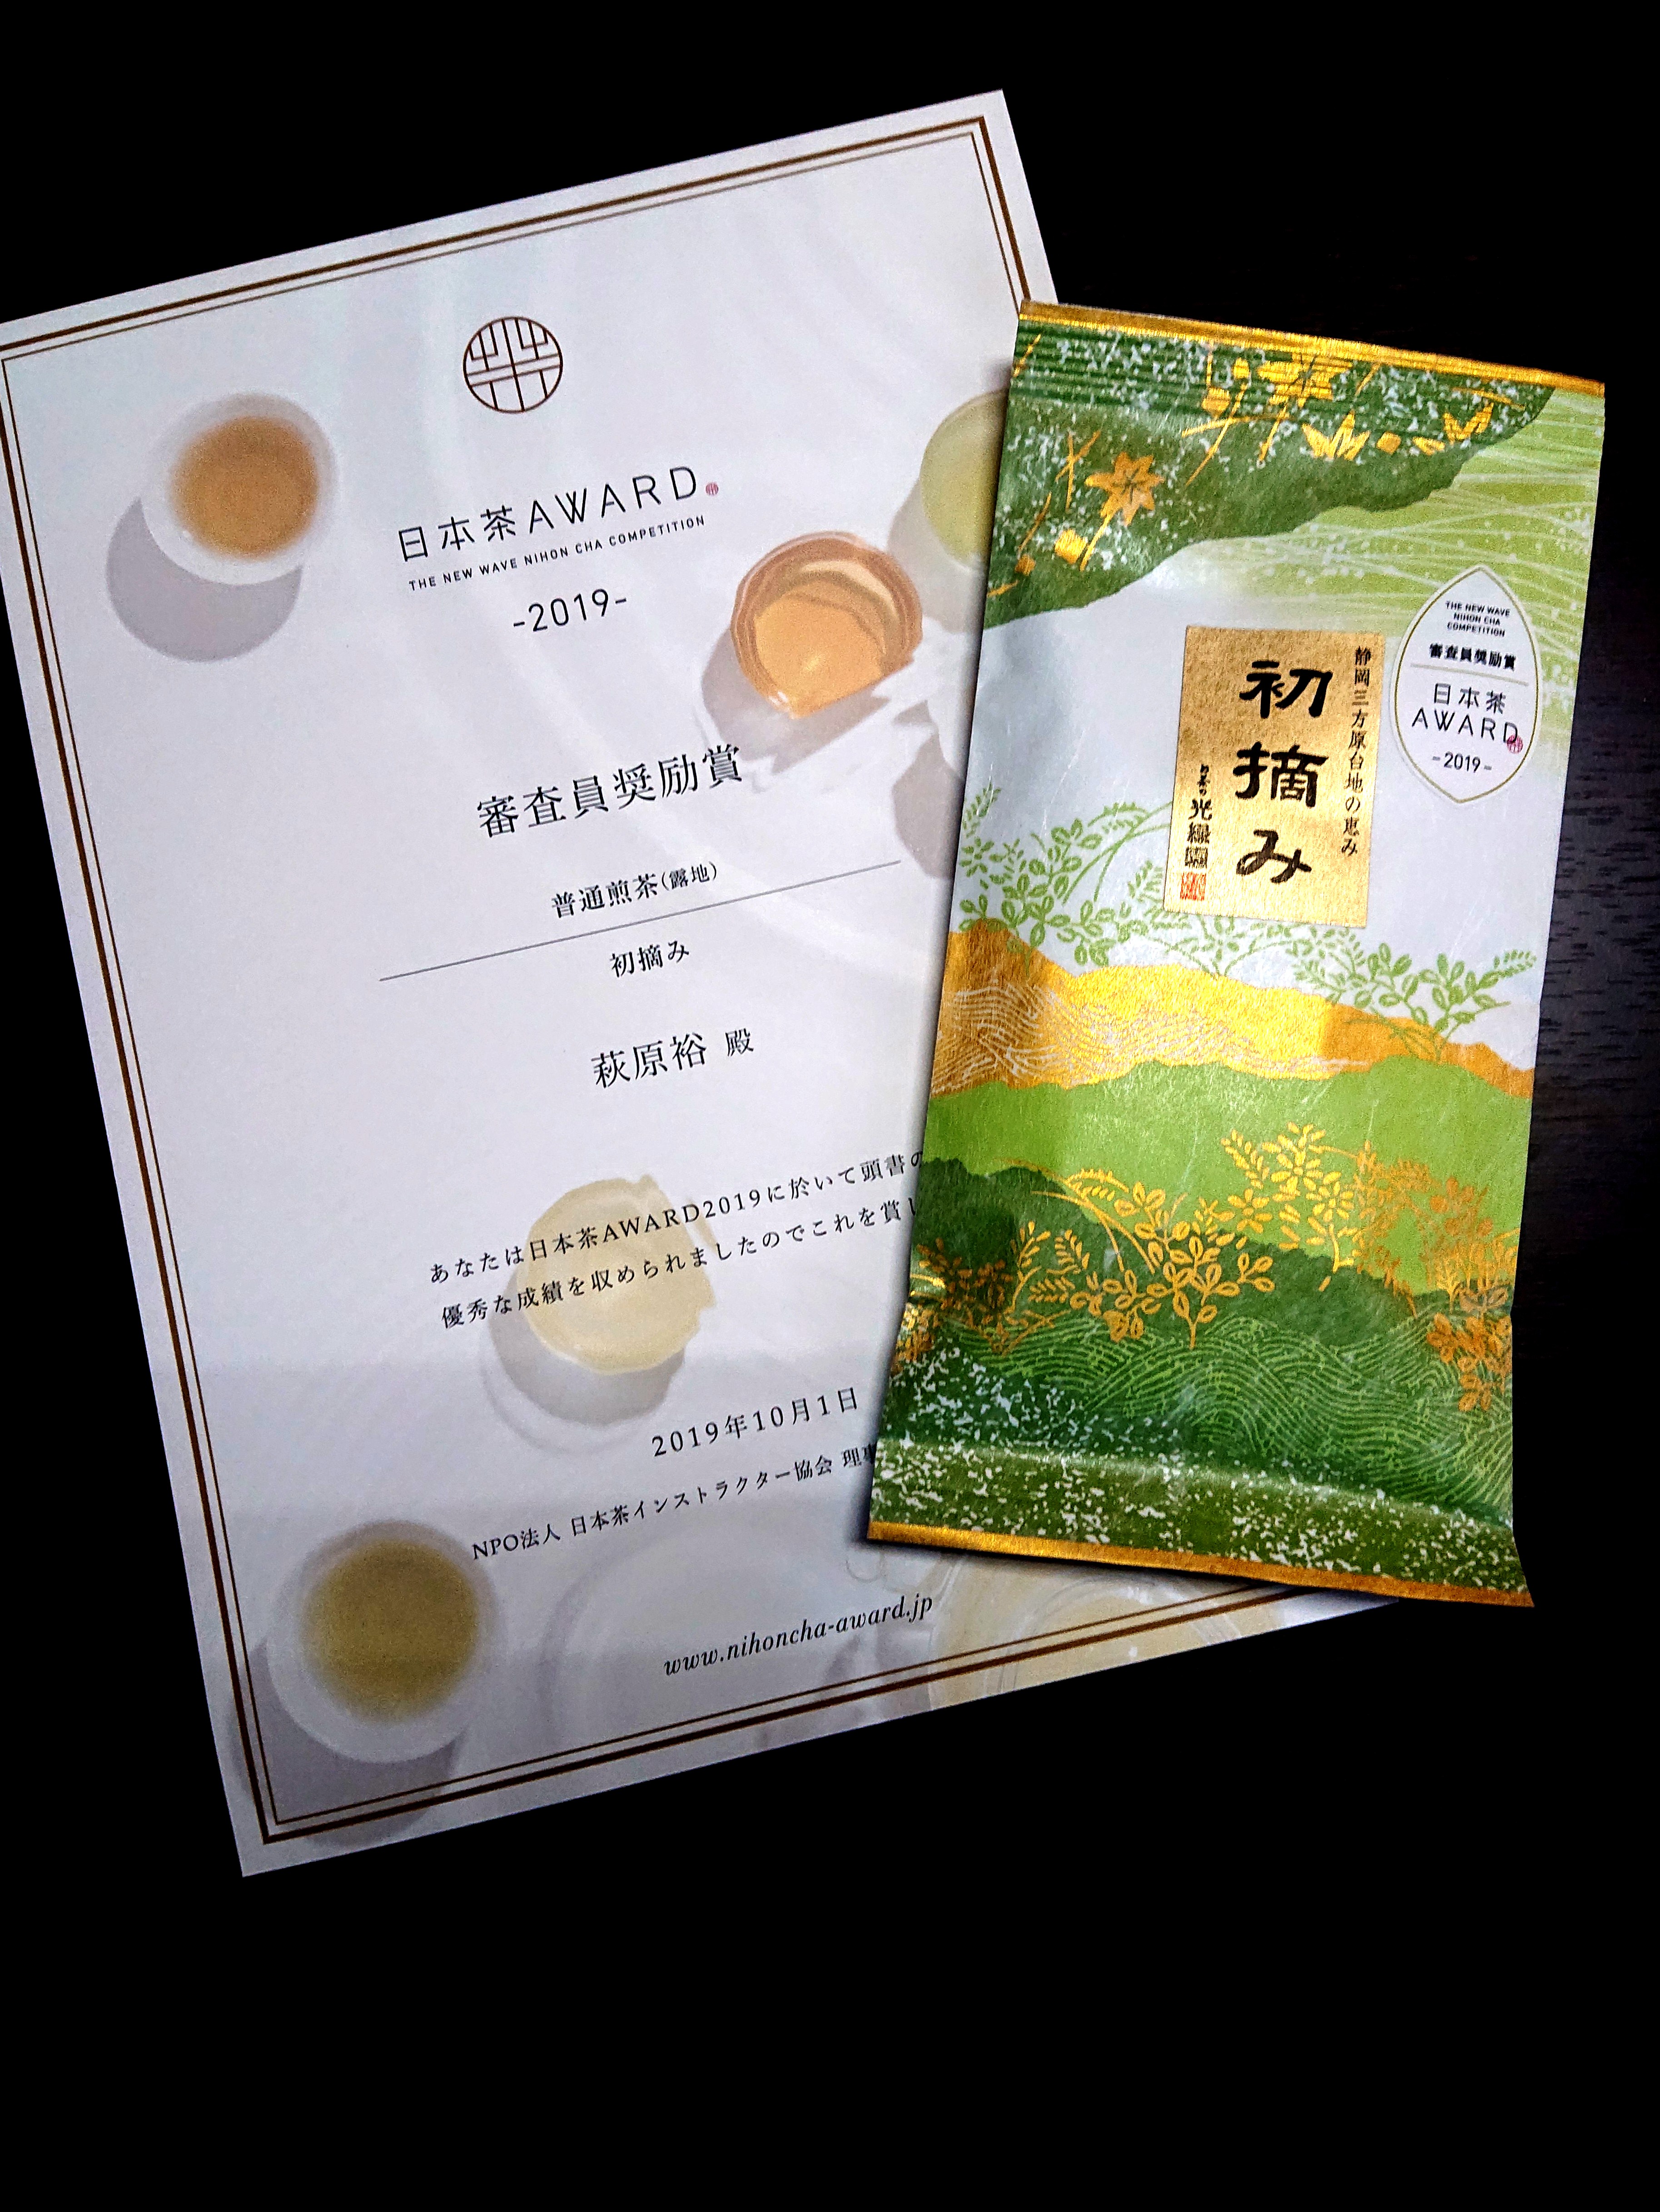 「日本茶AWARD2019」で審査員奨励賞を受賞しました